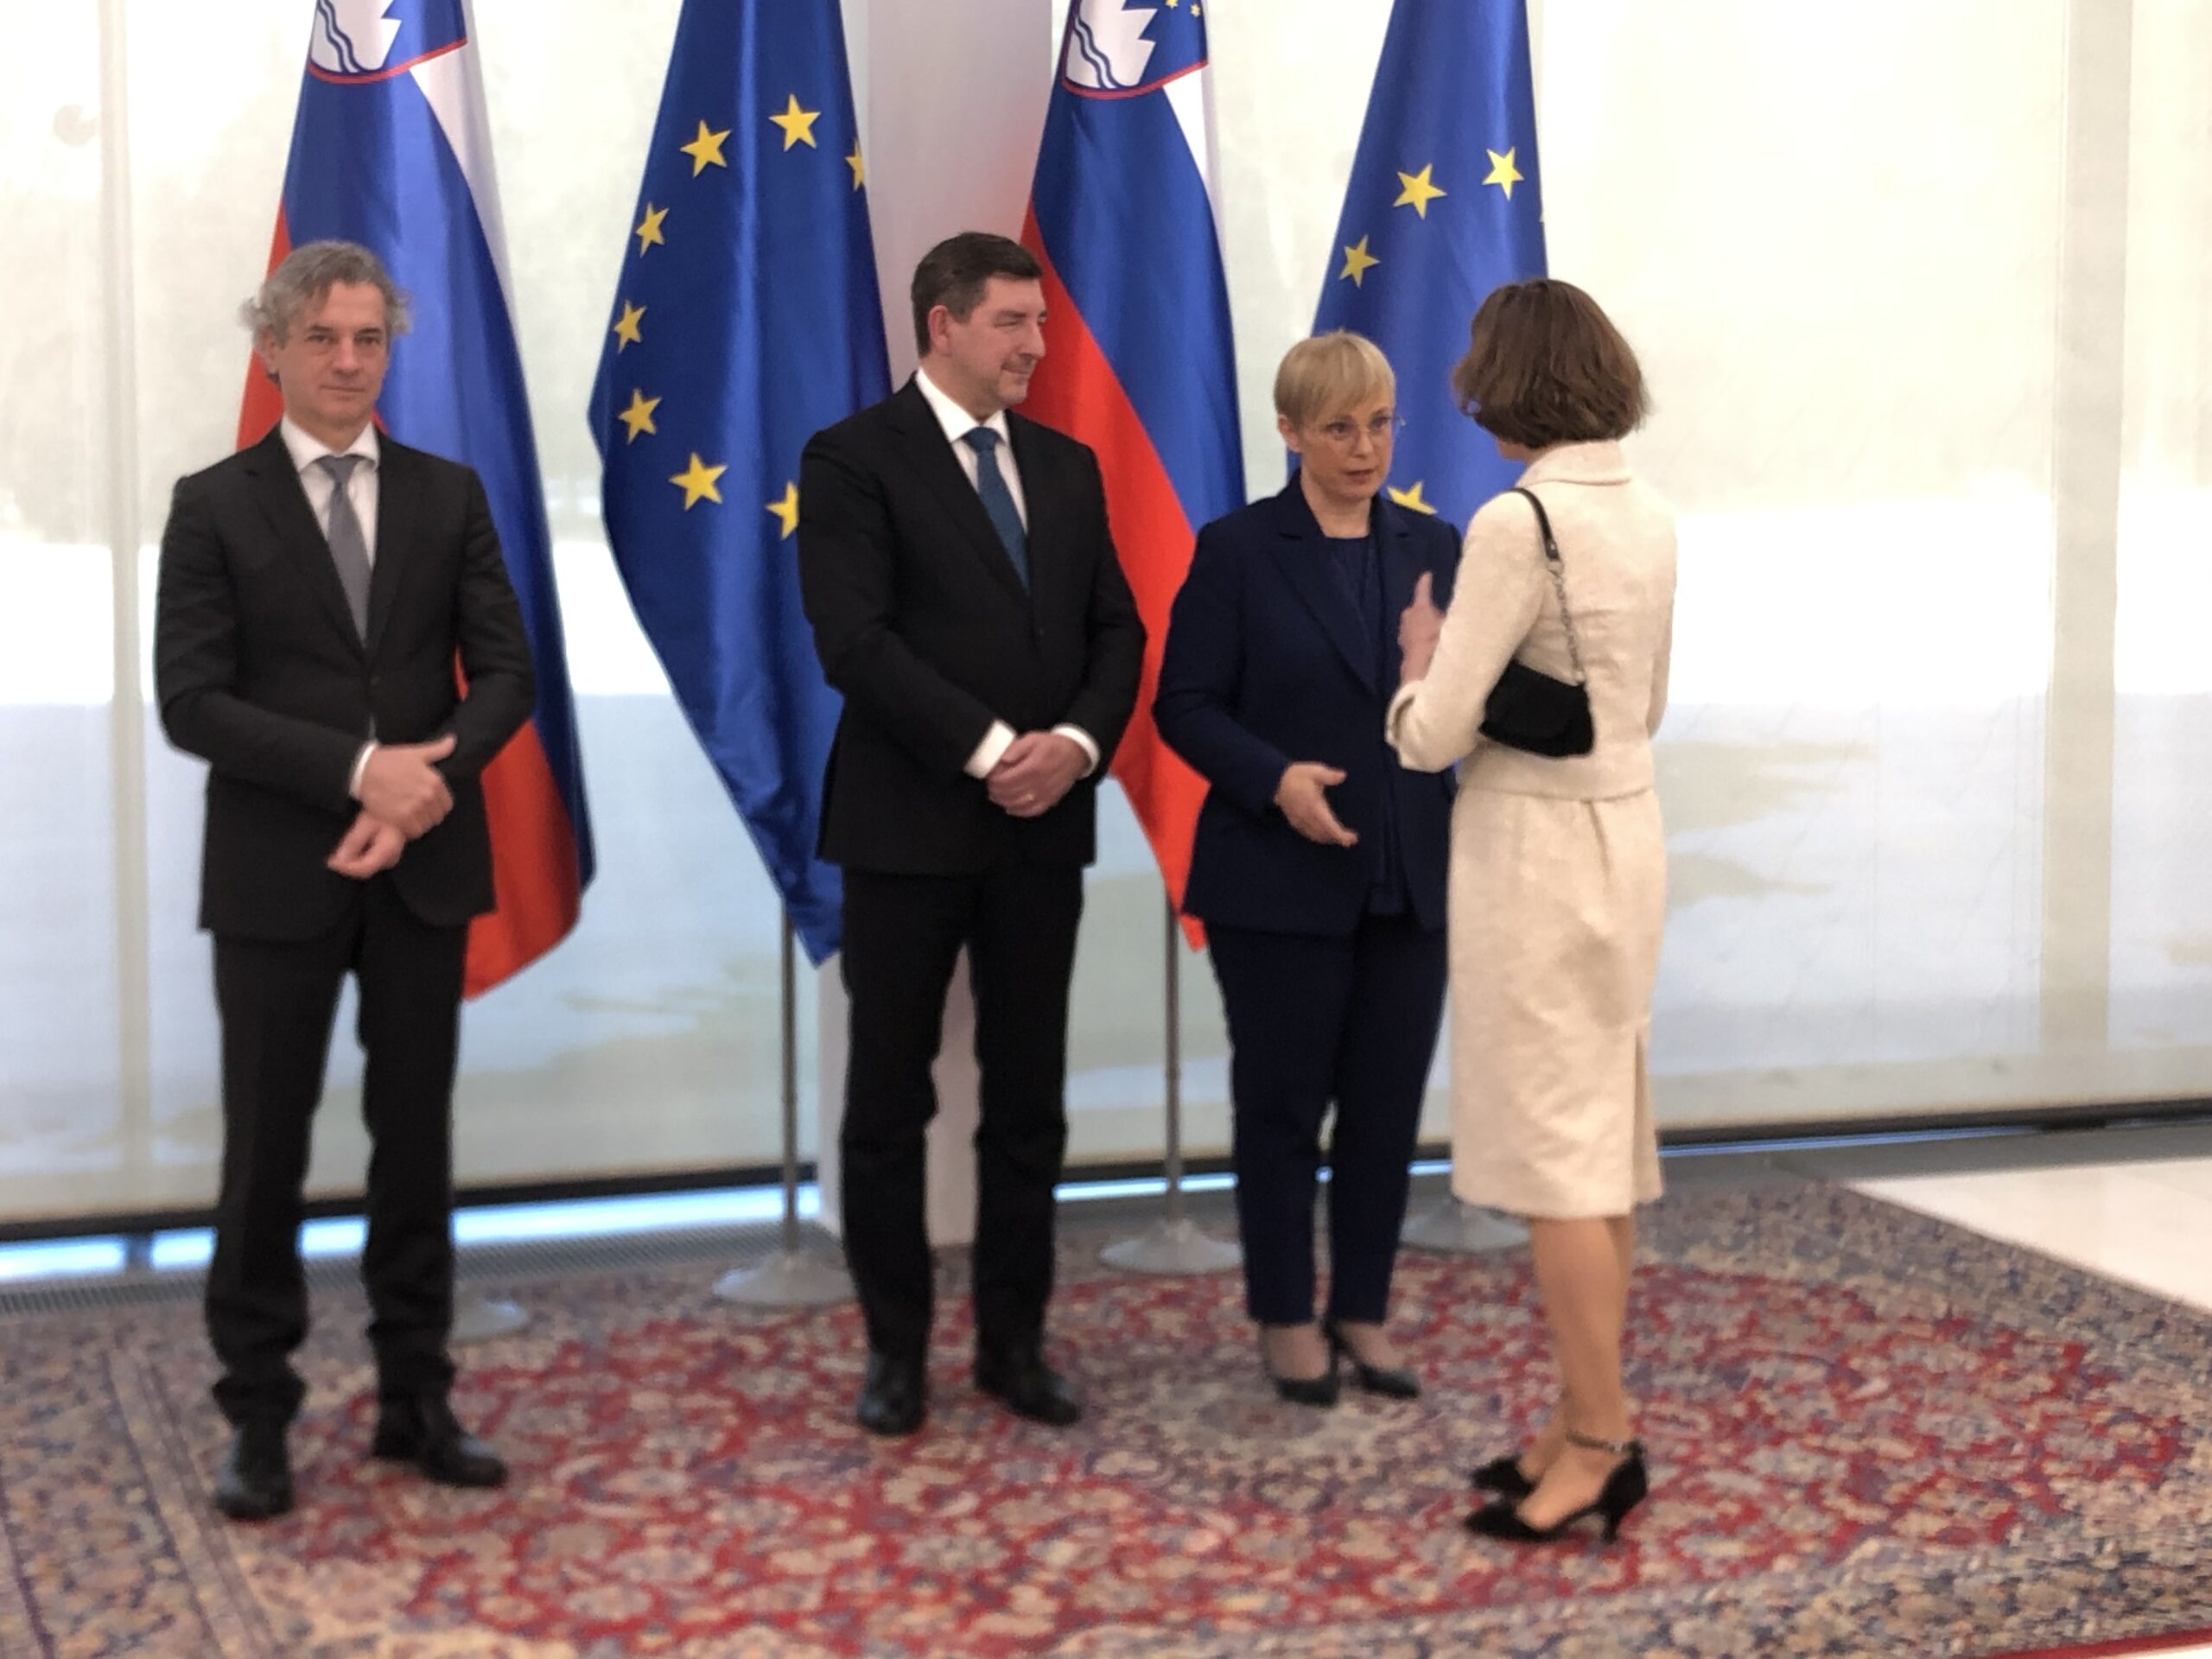 (V ŽIVO) Golob in Musarjeva na Brdu s tujimi diplomati – Na sprejem za tuje diplomate pa ni bil vabljen ruski veleposlanik v Sloveniji